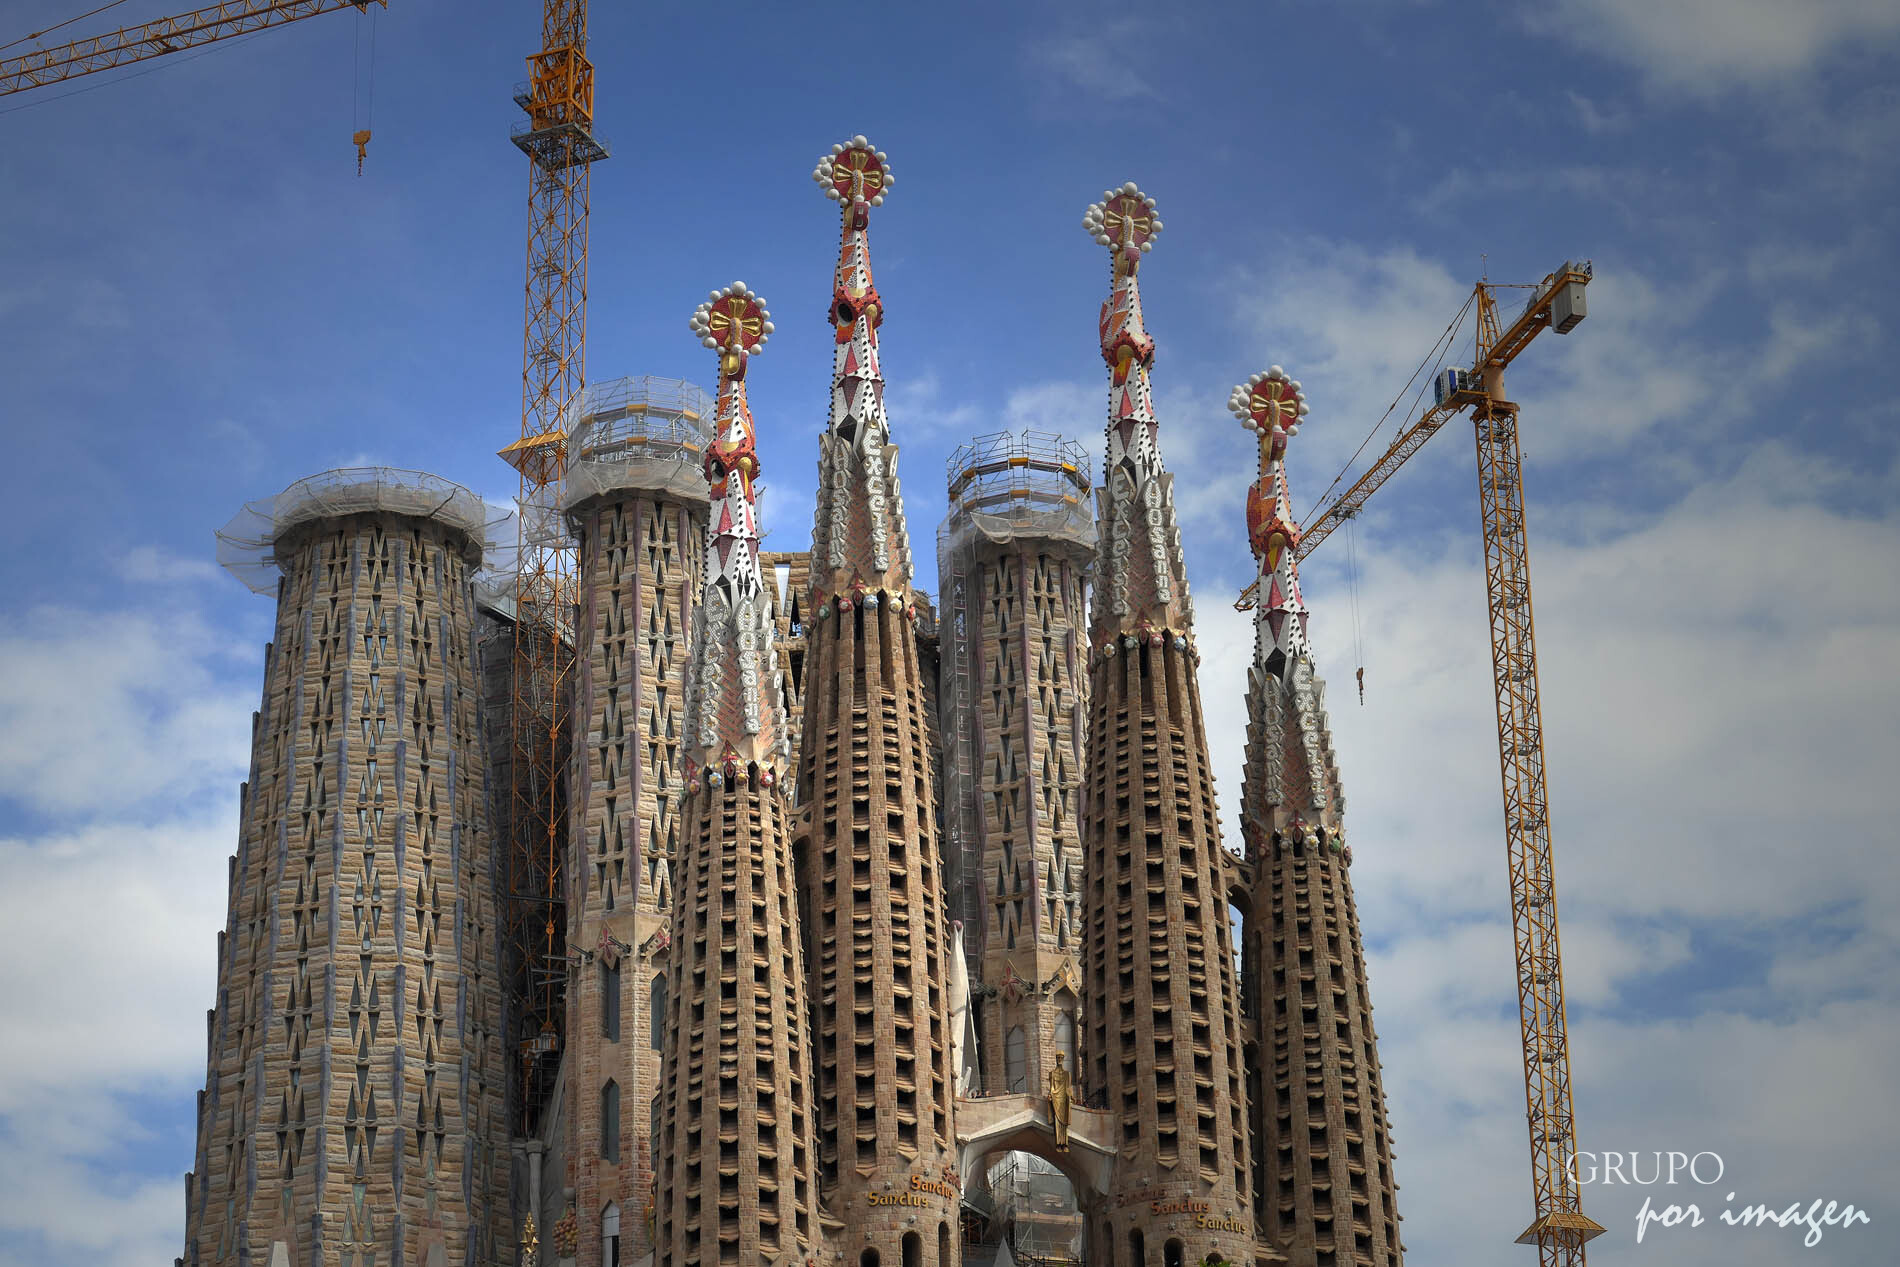 La Sagrada Familia – Barcelona / Efraín David